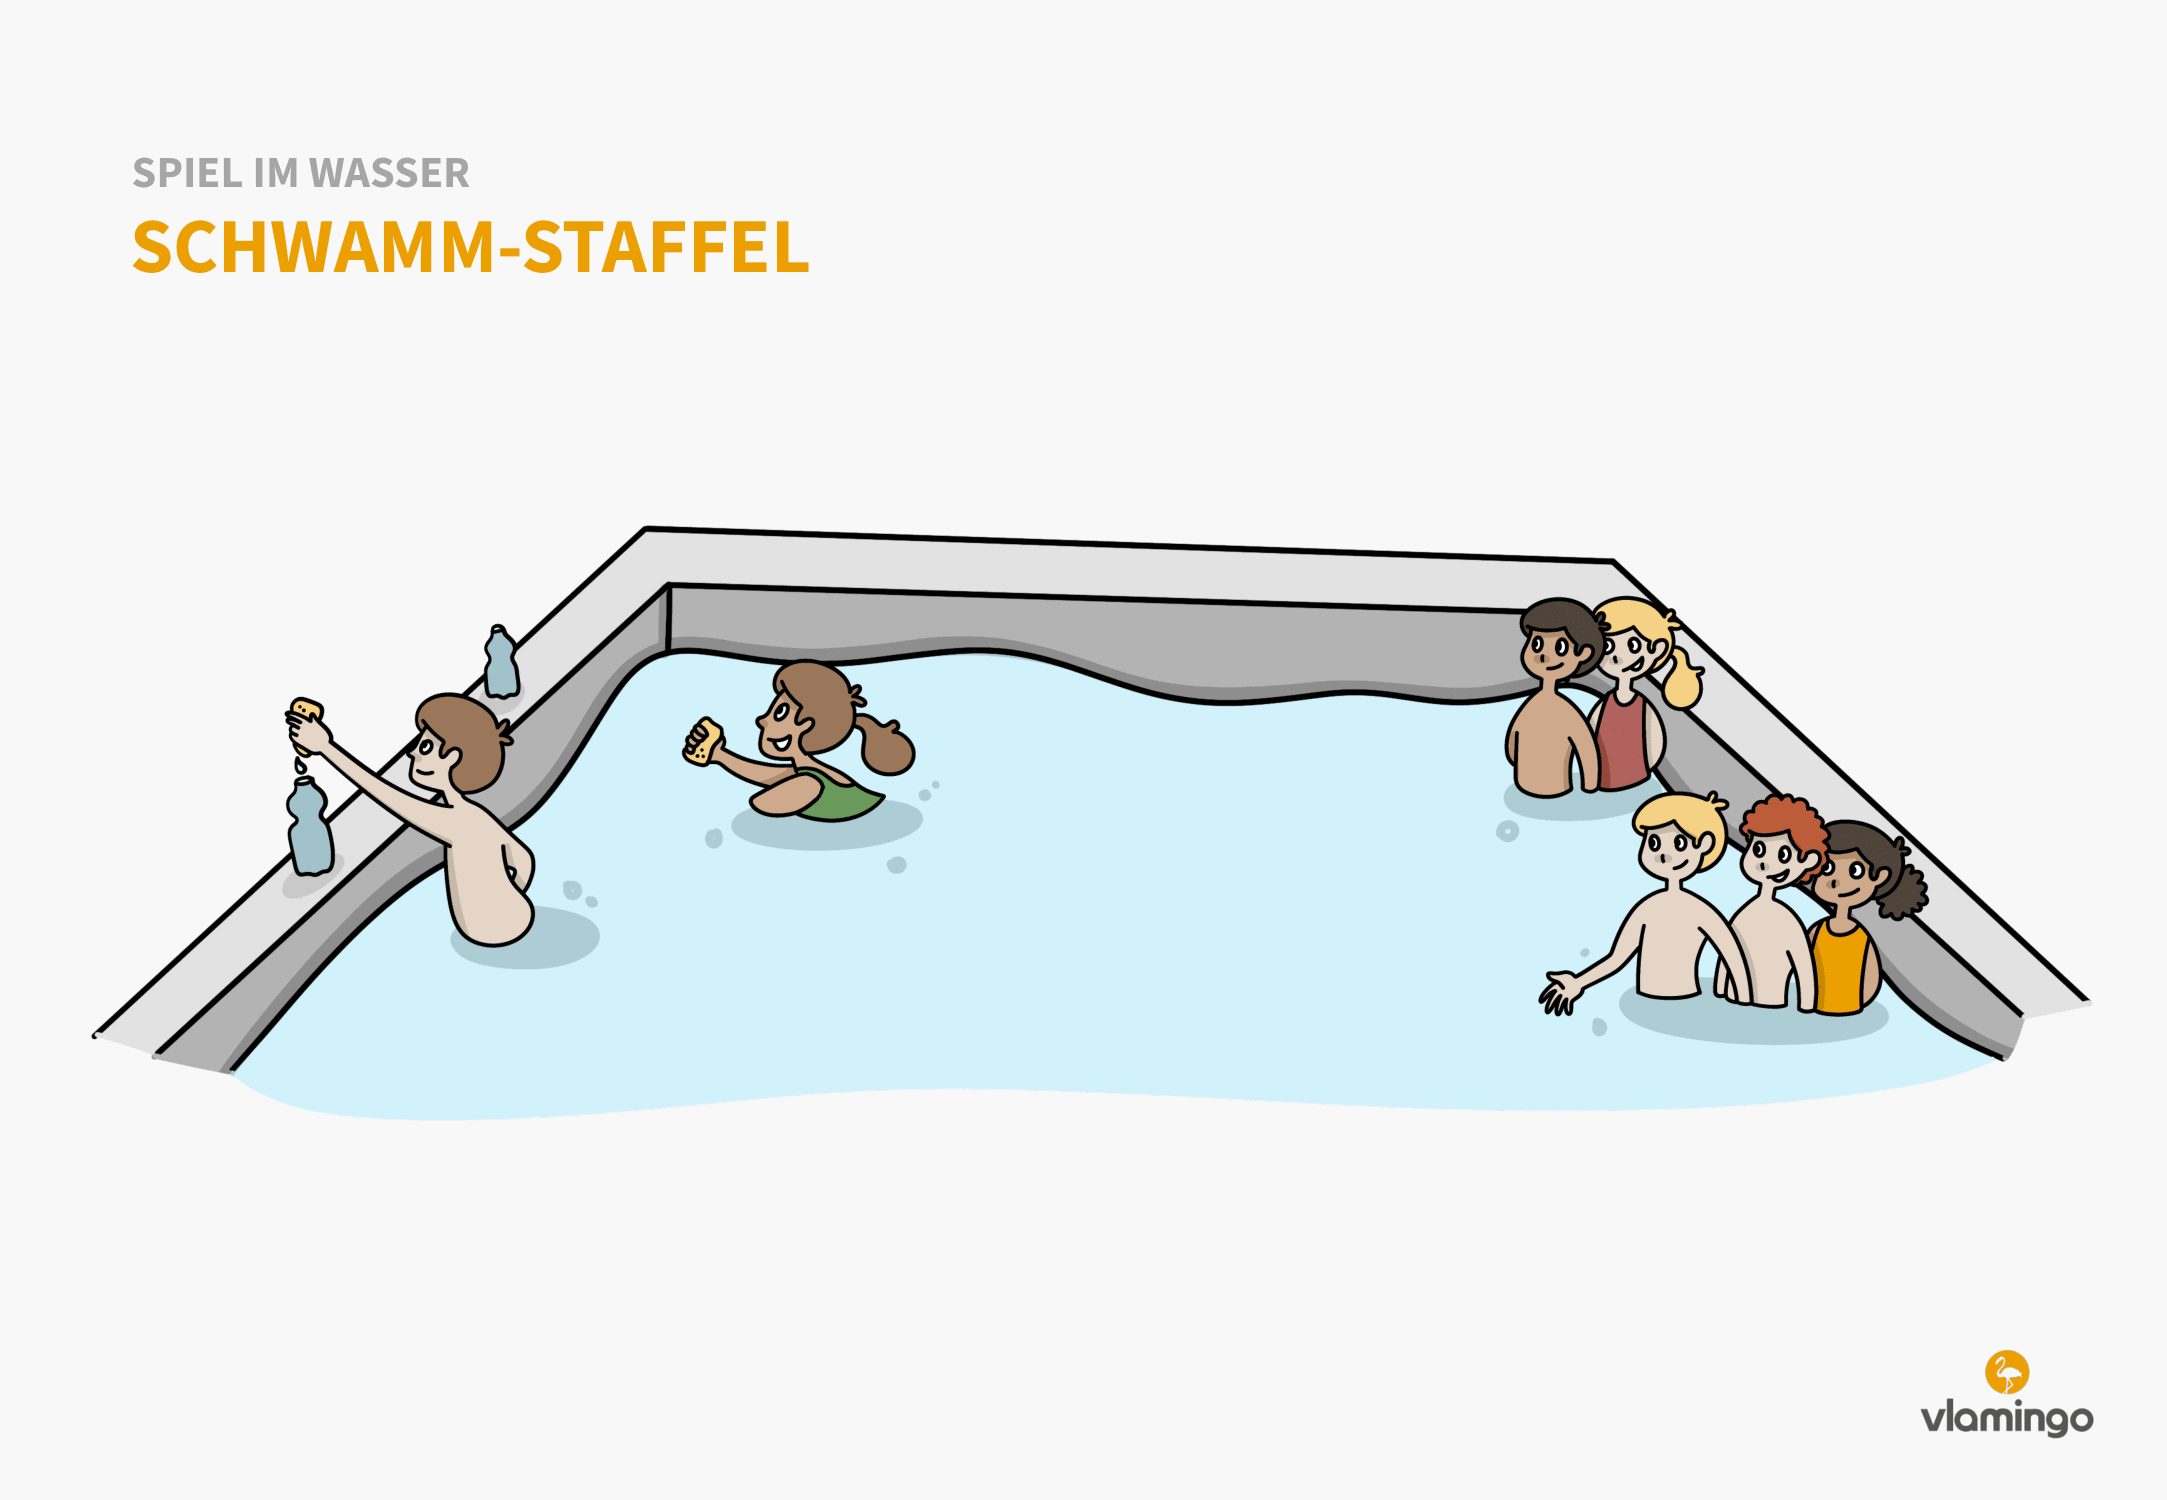 Schwamm-Staffel - Spiel im Wasser - Schwimmspiel